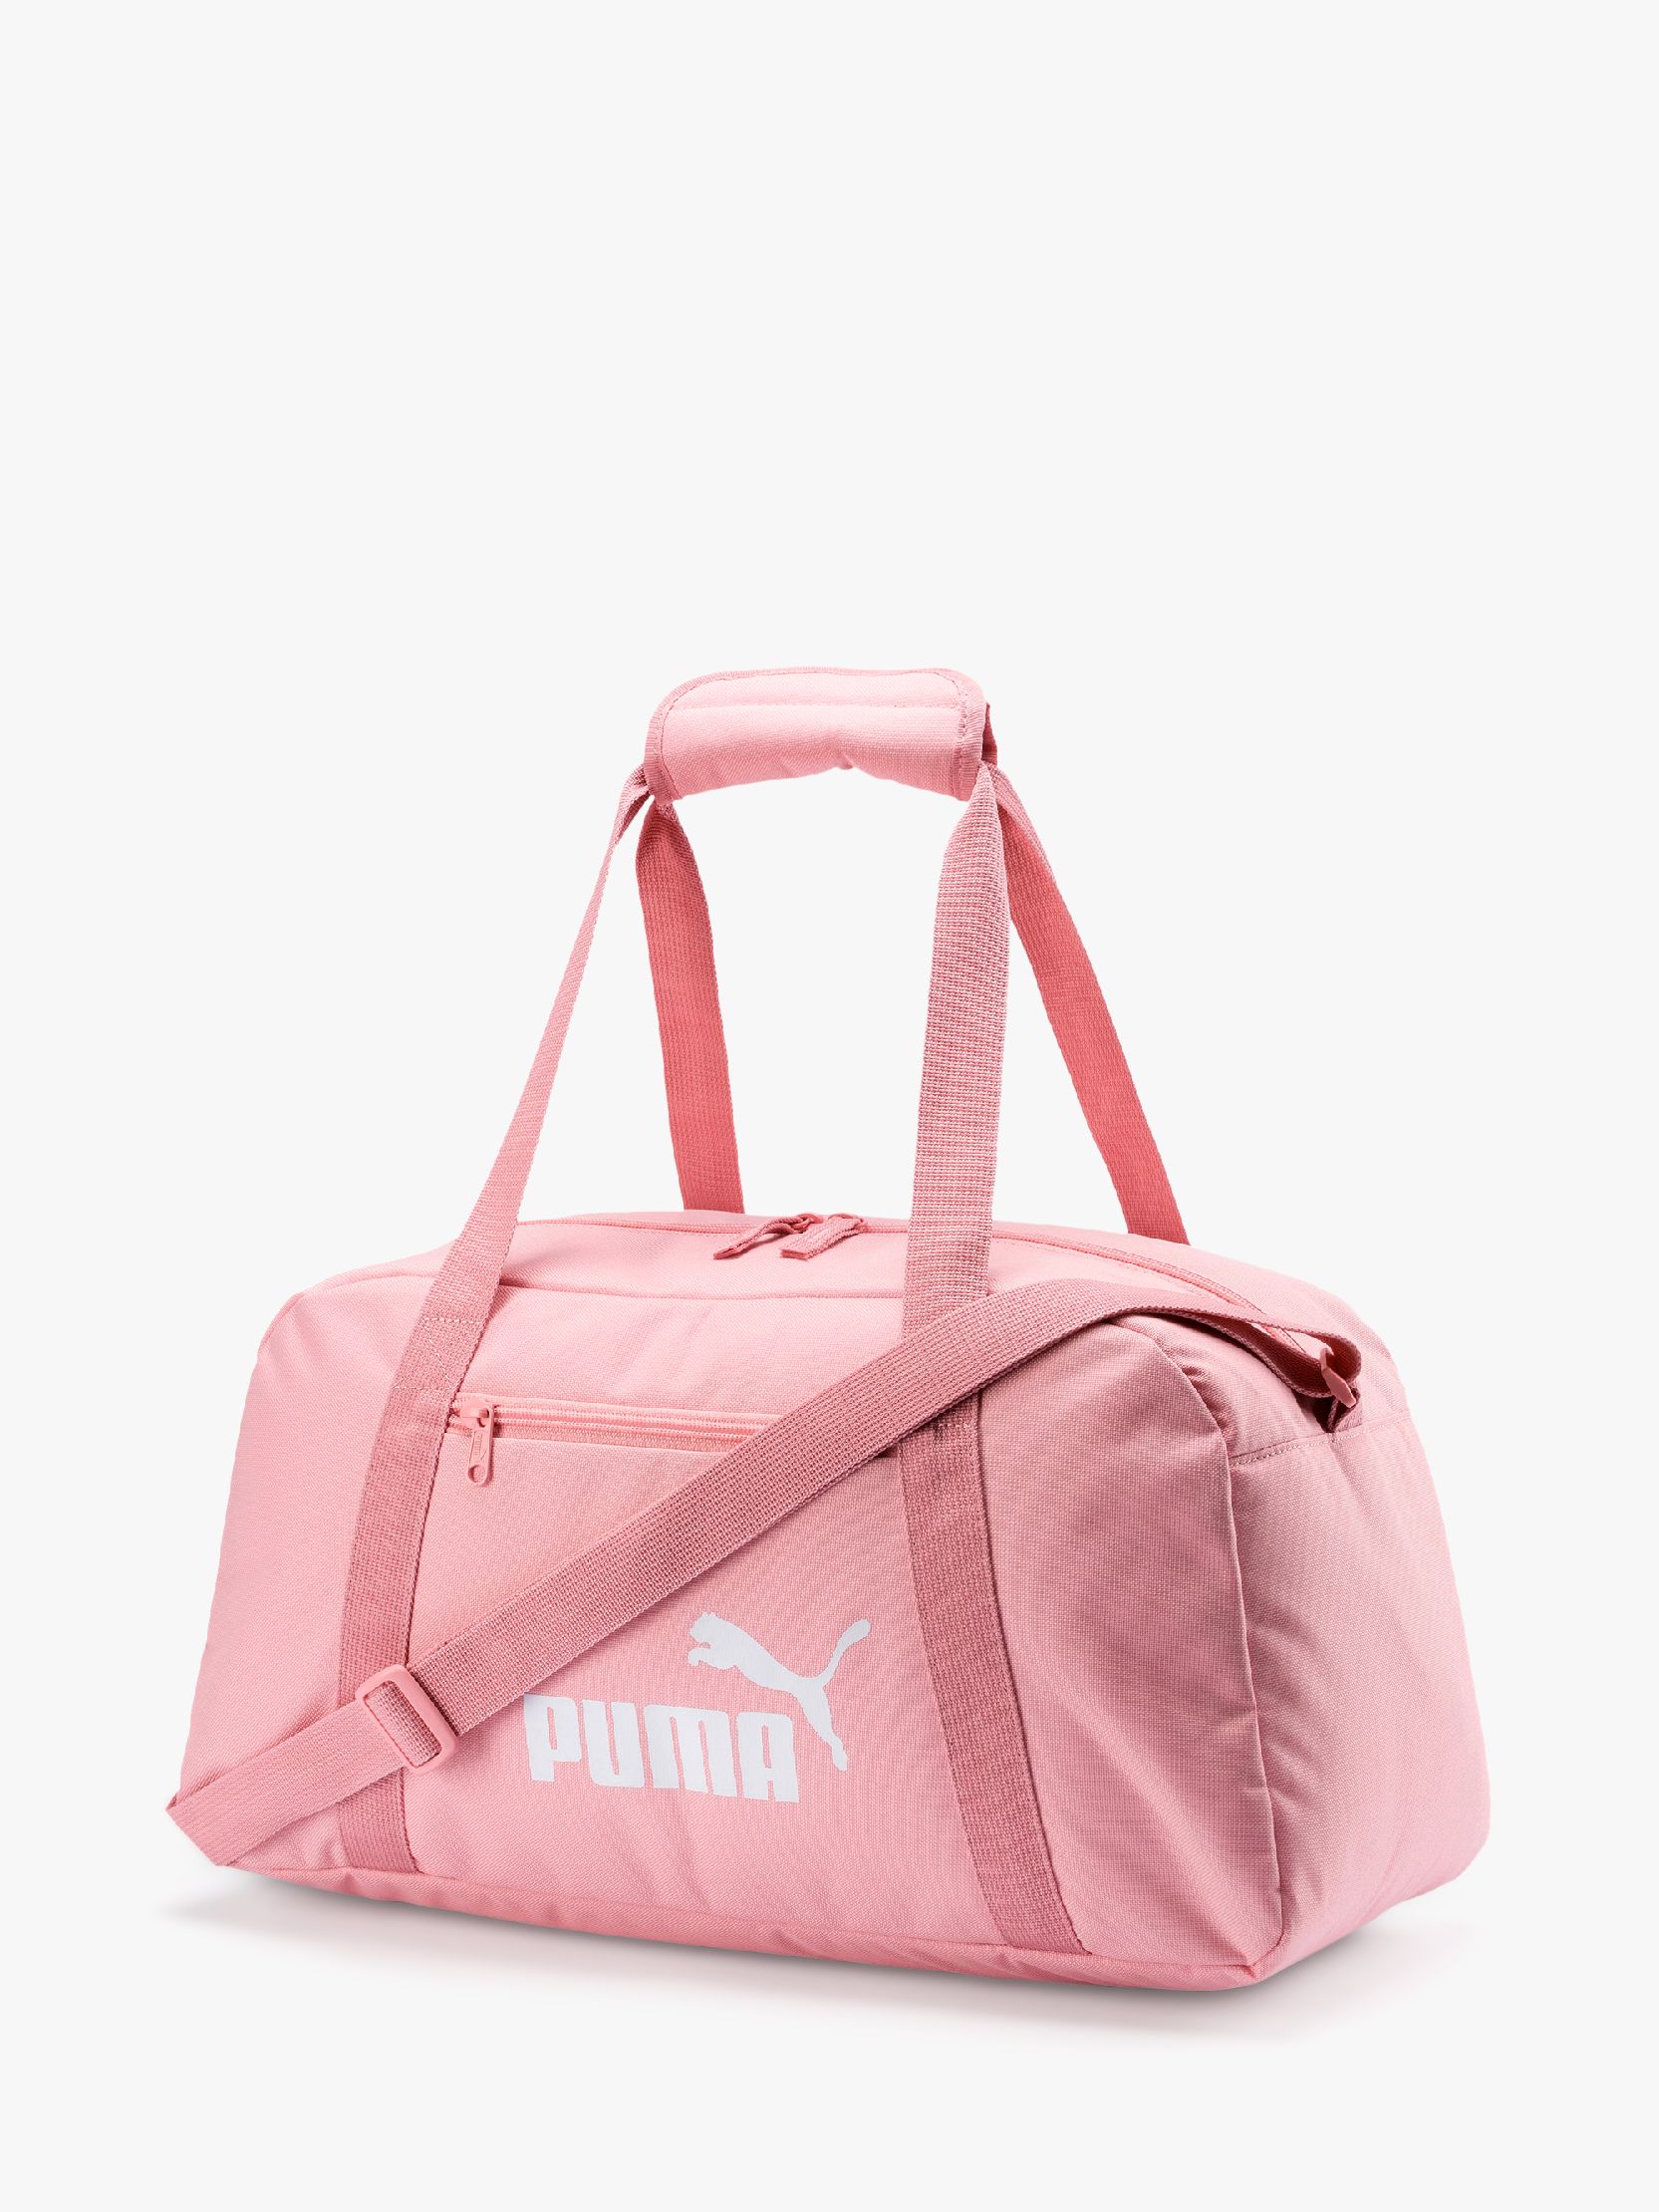 Phase Sport Bag, Pink at John Lewis 